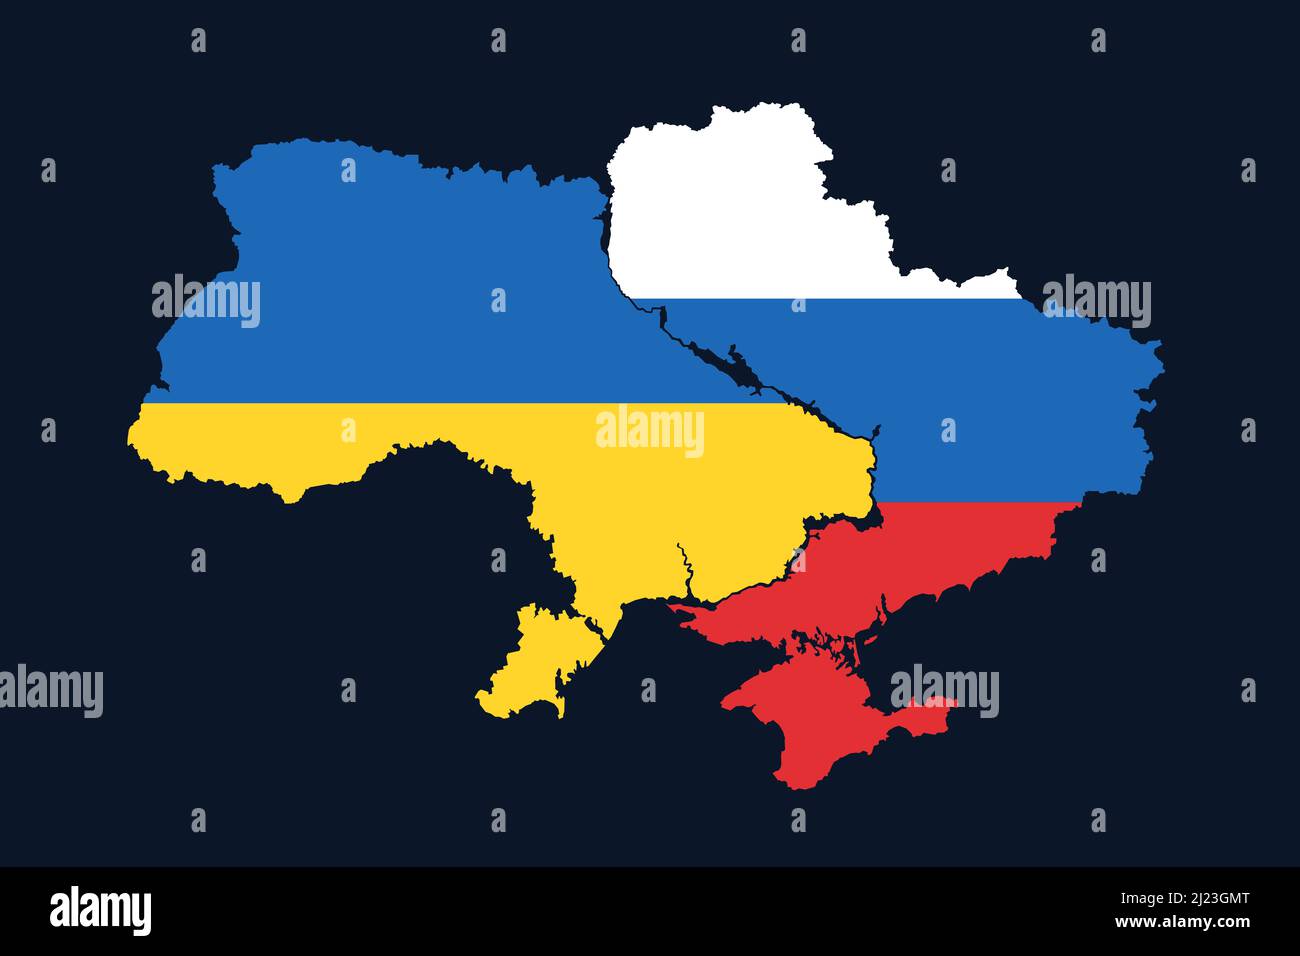 Ucrania está dividida, dividida y separada en la parte ucraniana y rusa. Disolución, colapso y desintegración del Estado y del país unidos. Mapa y. Foto de stock